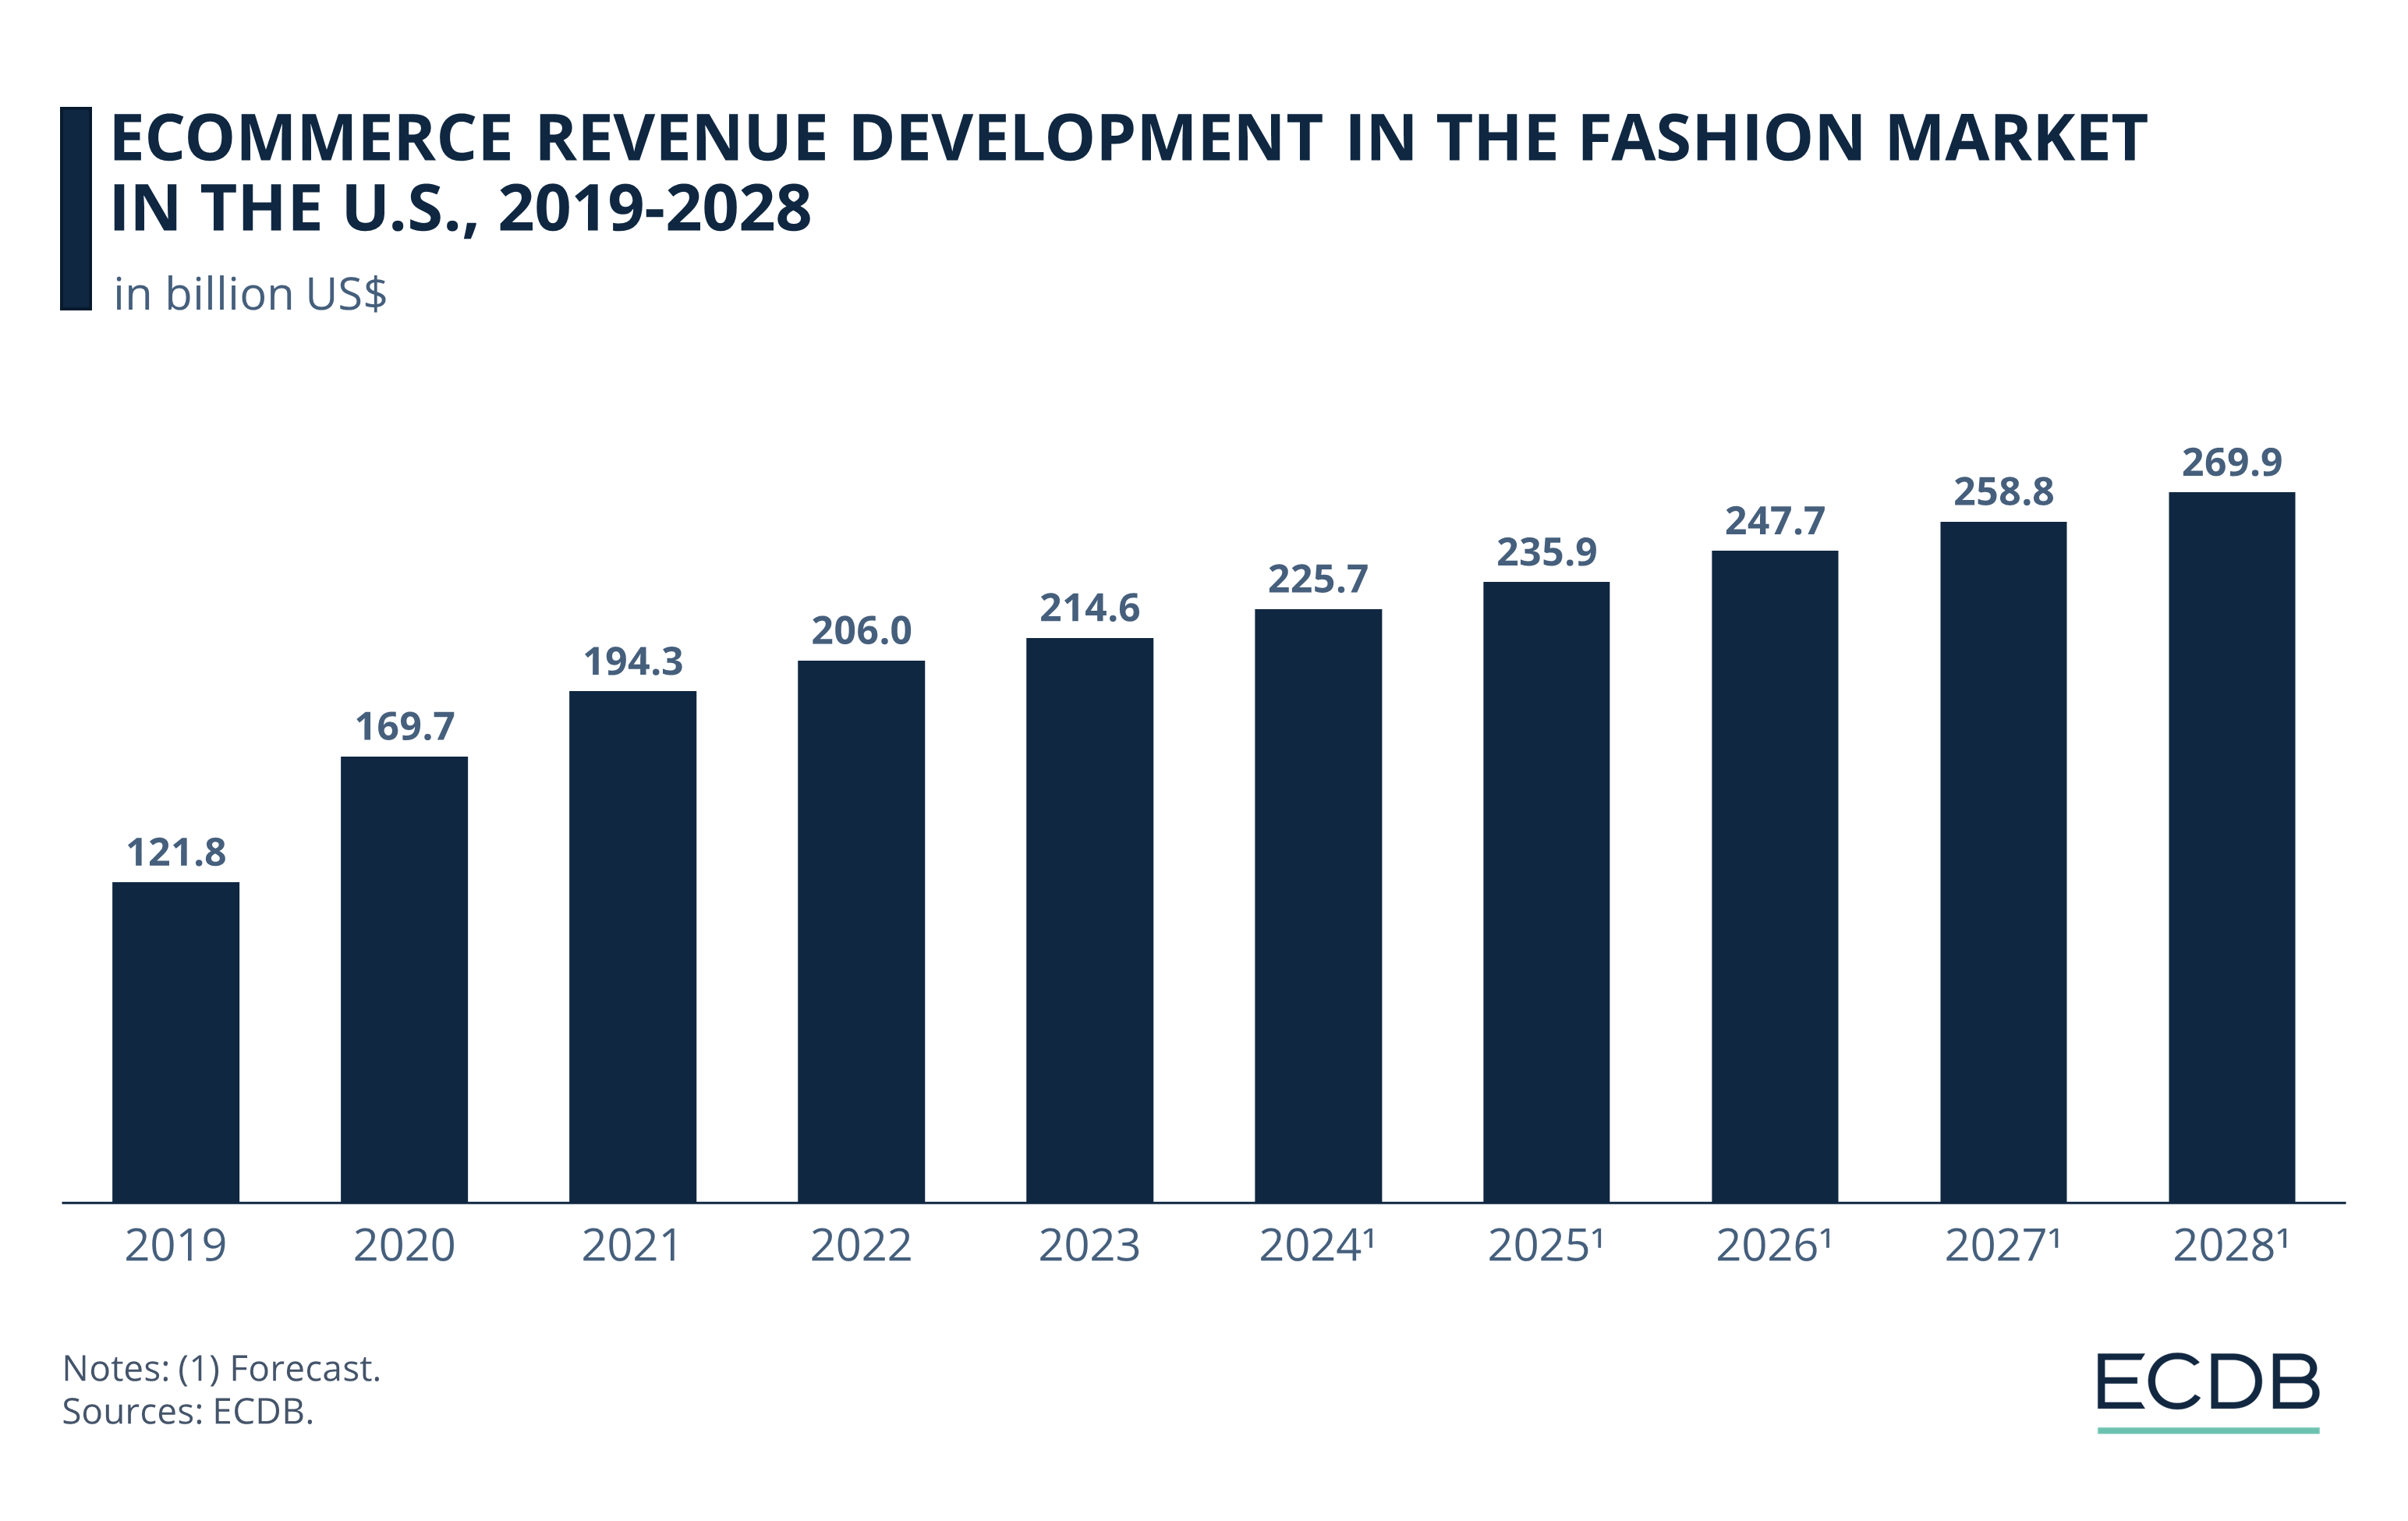 eCommerce Revenue Development in the U.S. Fashion Market, 2019-2028